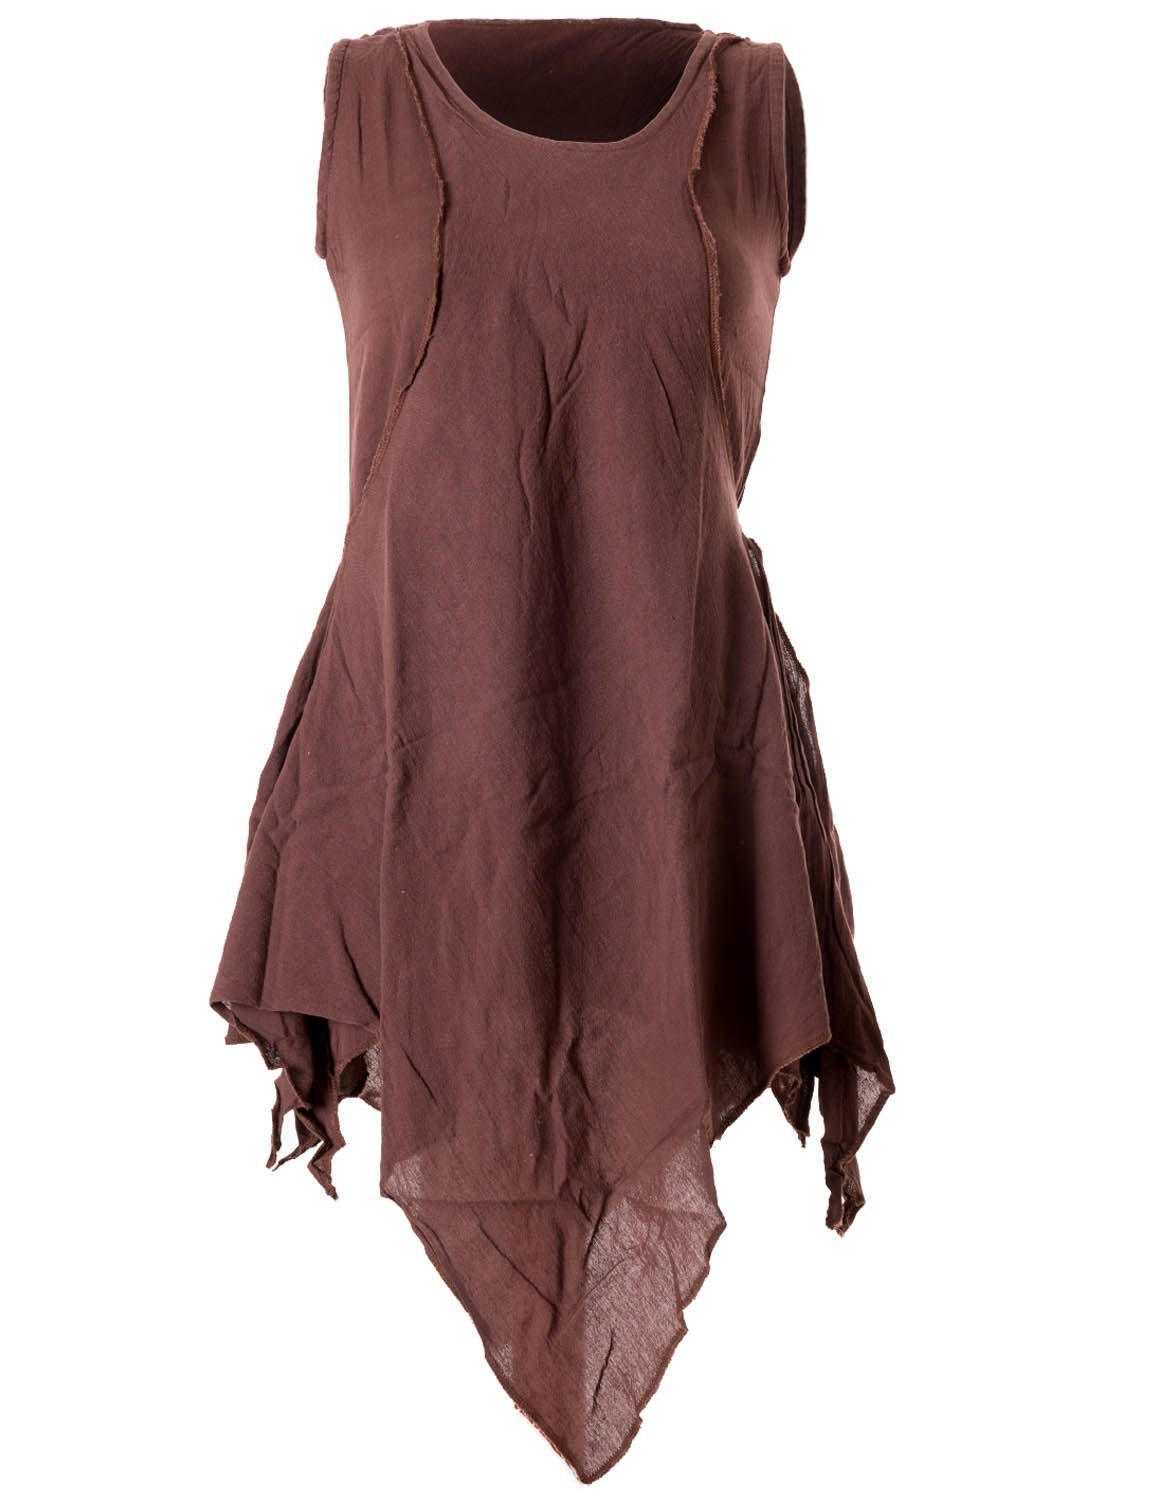 Vishes Tunikakleid Zipfeliges Lagenlook Shirt Tunika im Used-Look Hippie, Ethno, Elfen, Goa Style braun